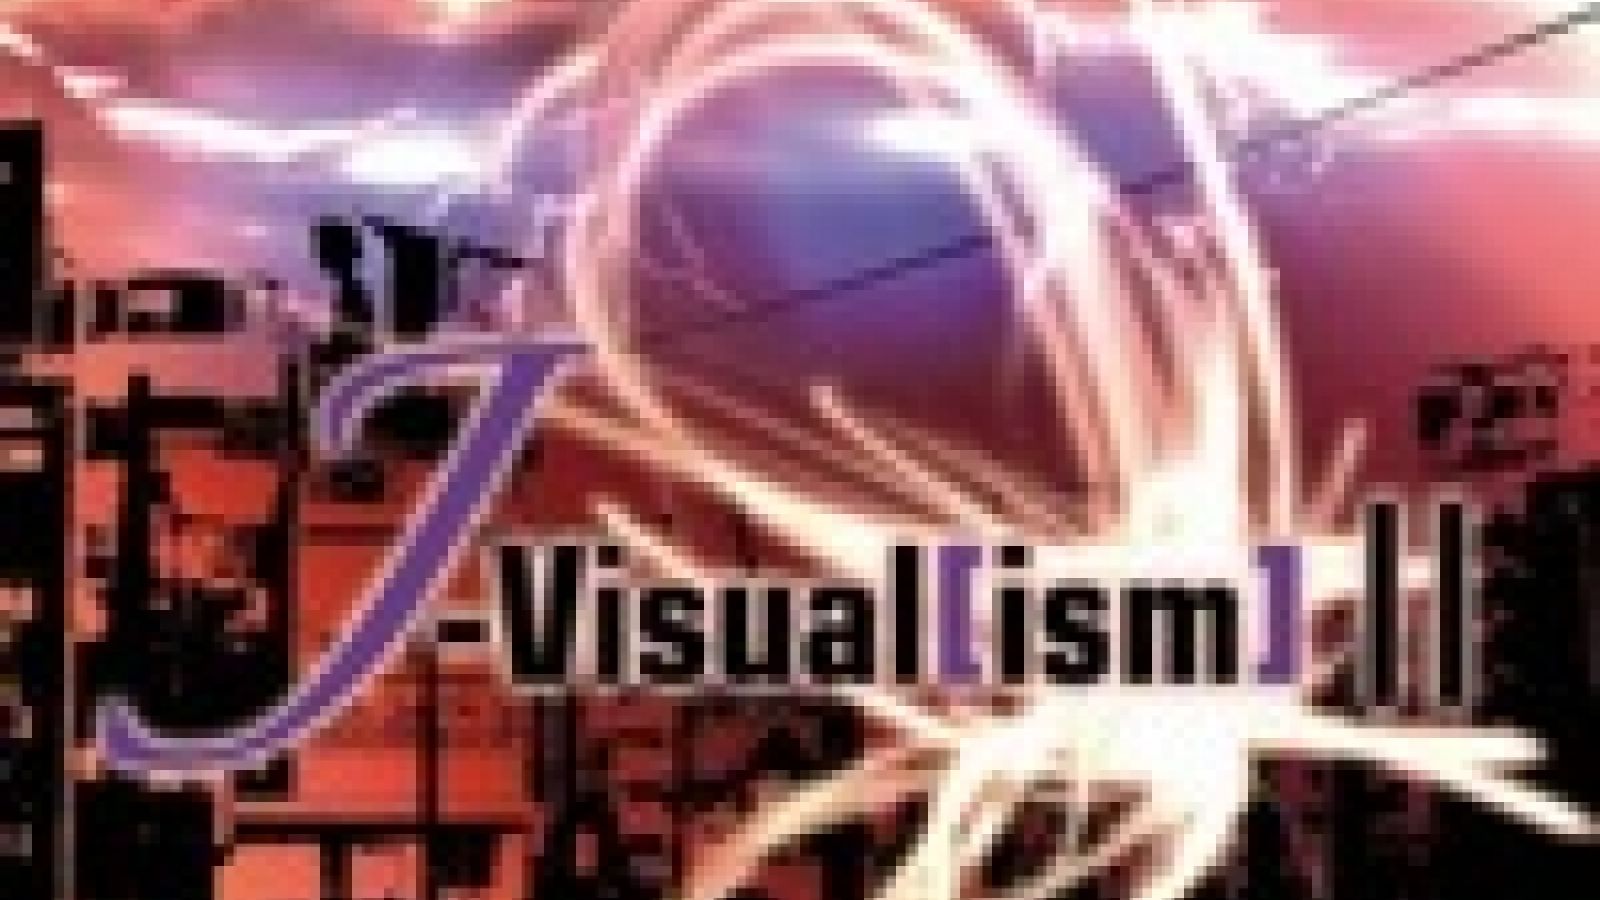 J-Visual[ism] 2 © J-ROCK